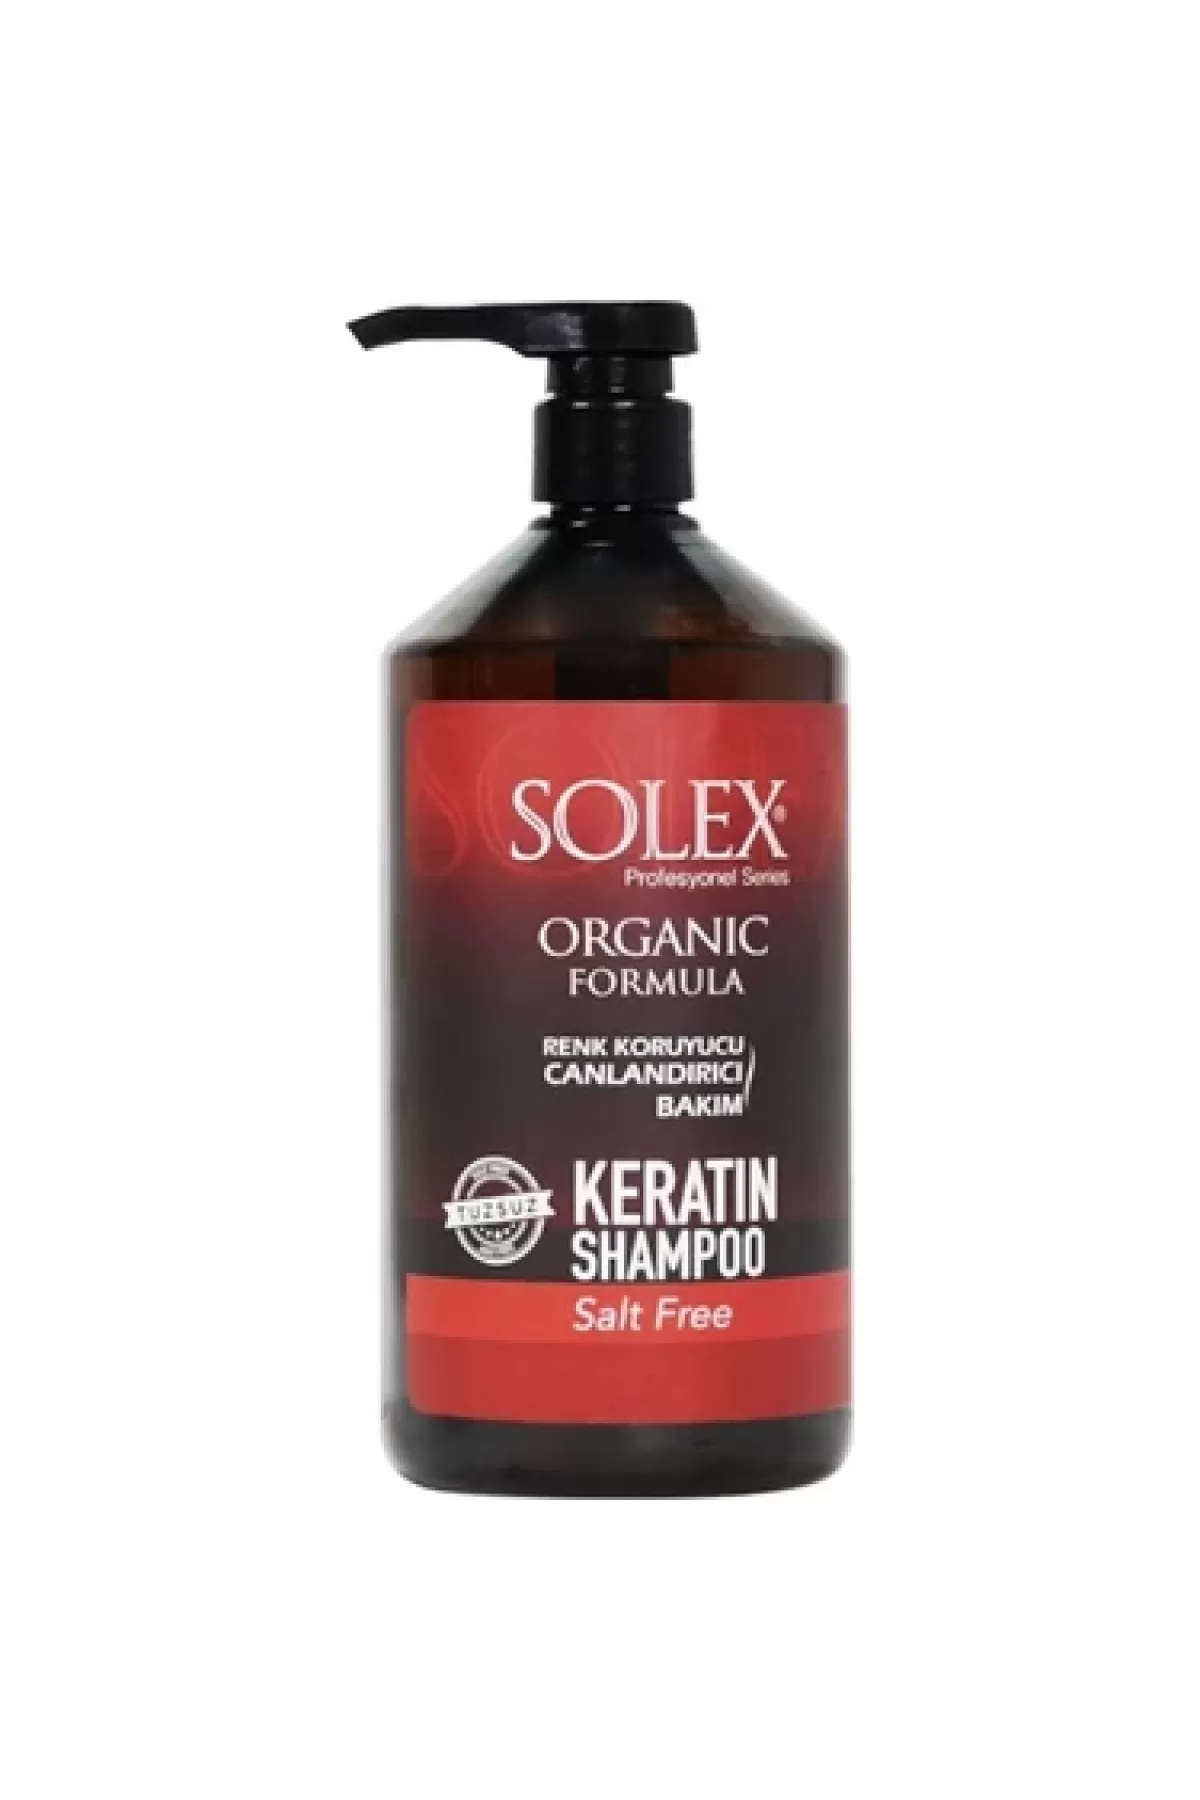 مناسب برای موهای رنگ شده،حاوی کراتین،بدون نمک سولکس SOLEX شامپو کراتینه